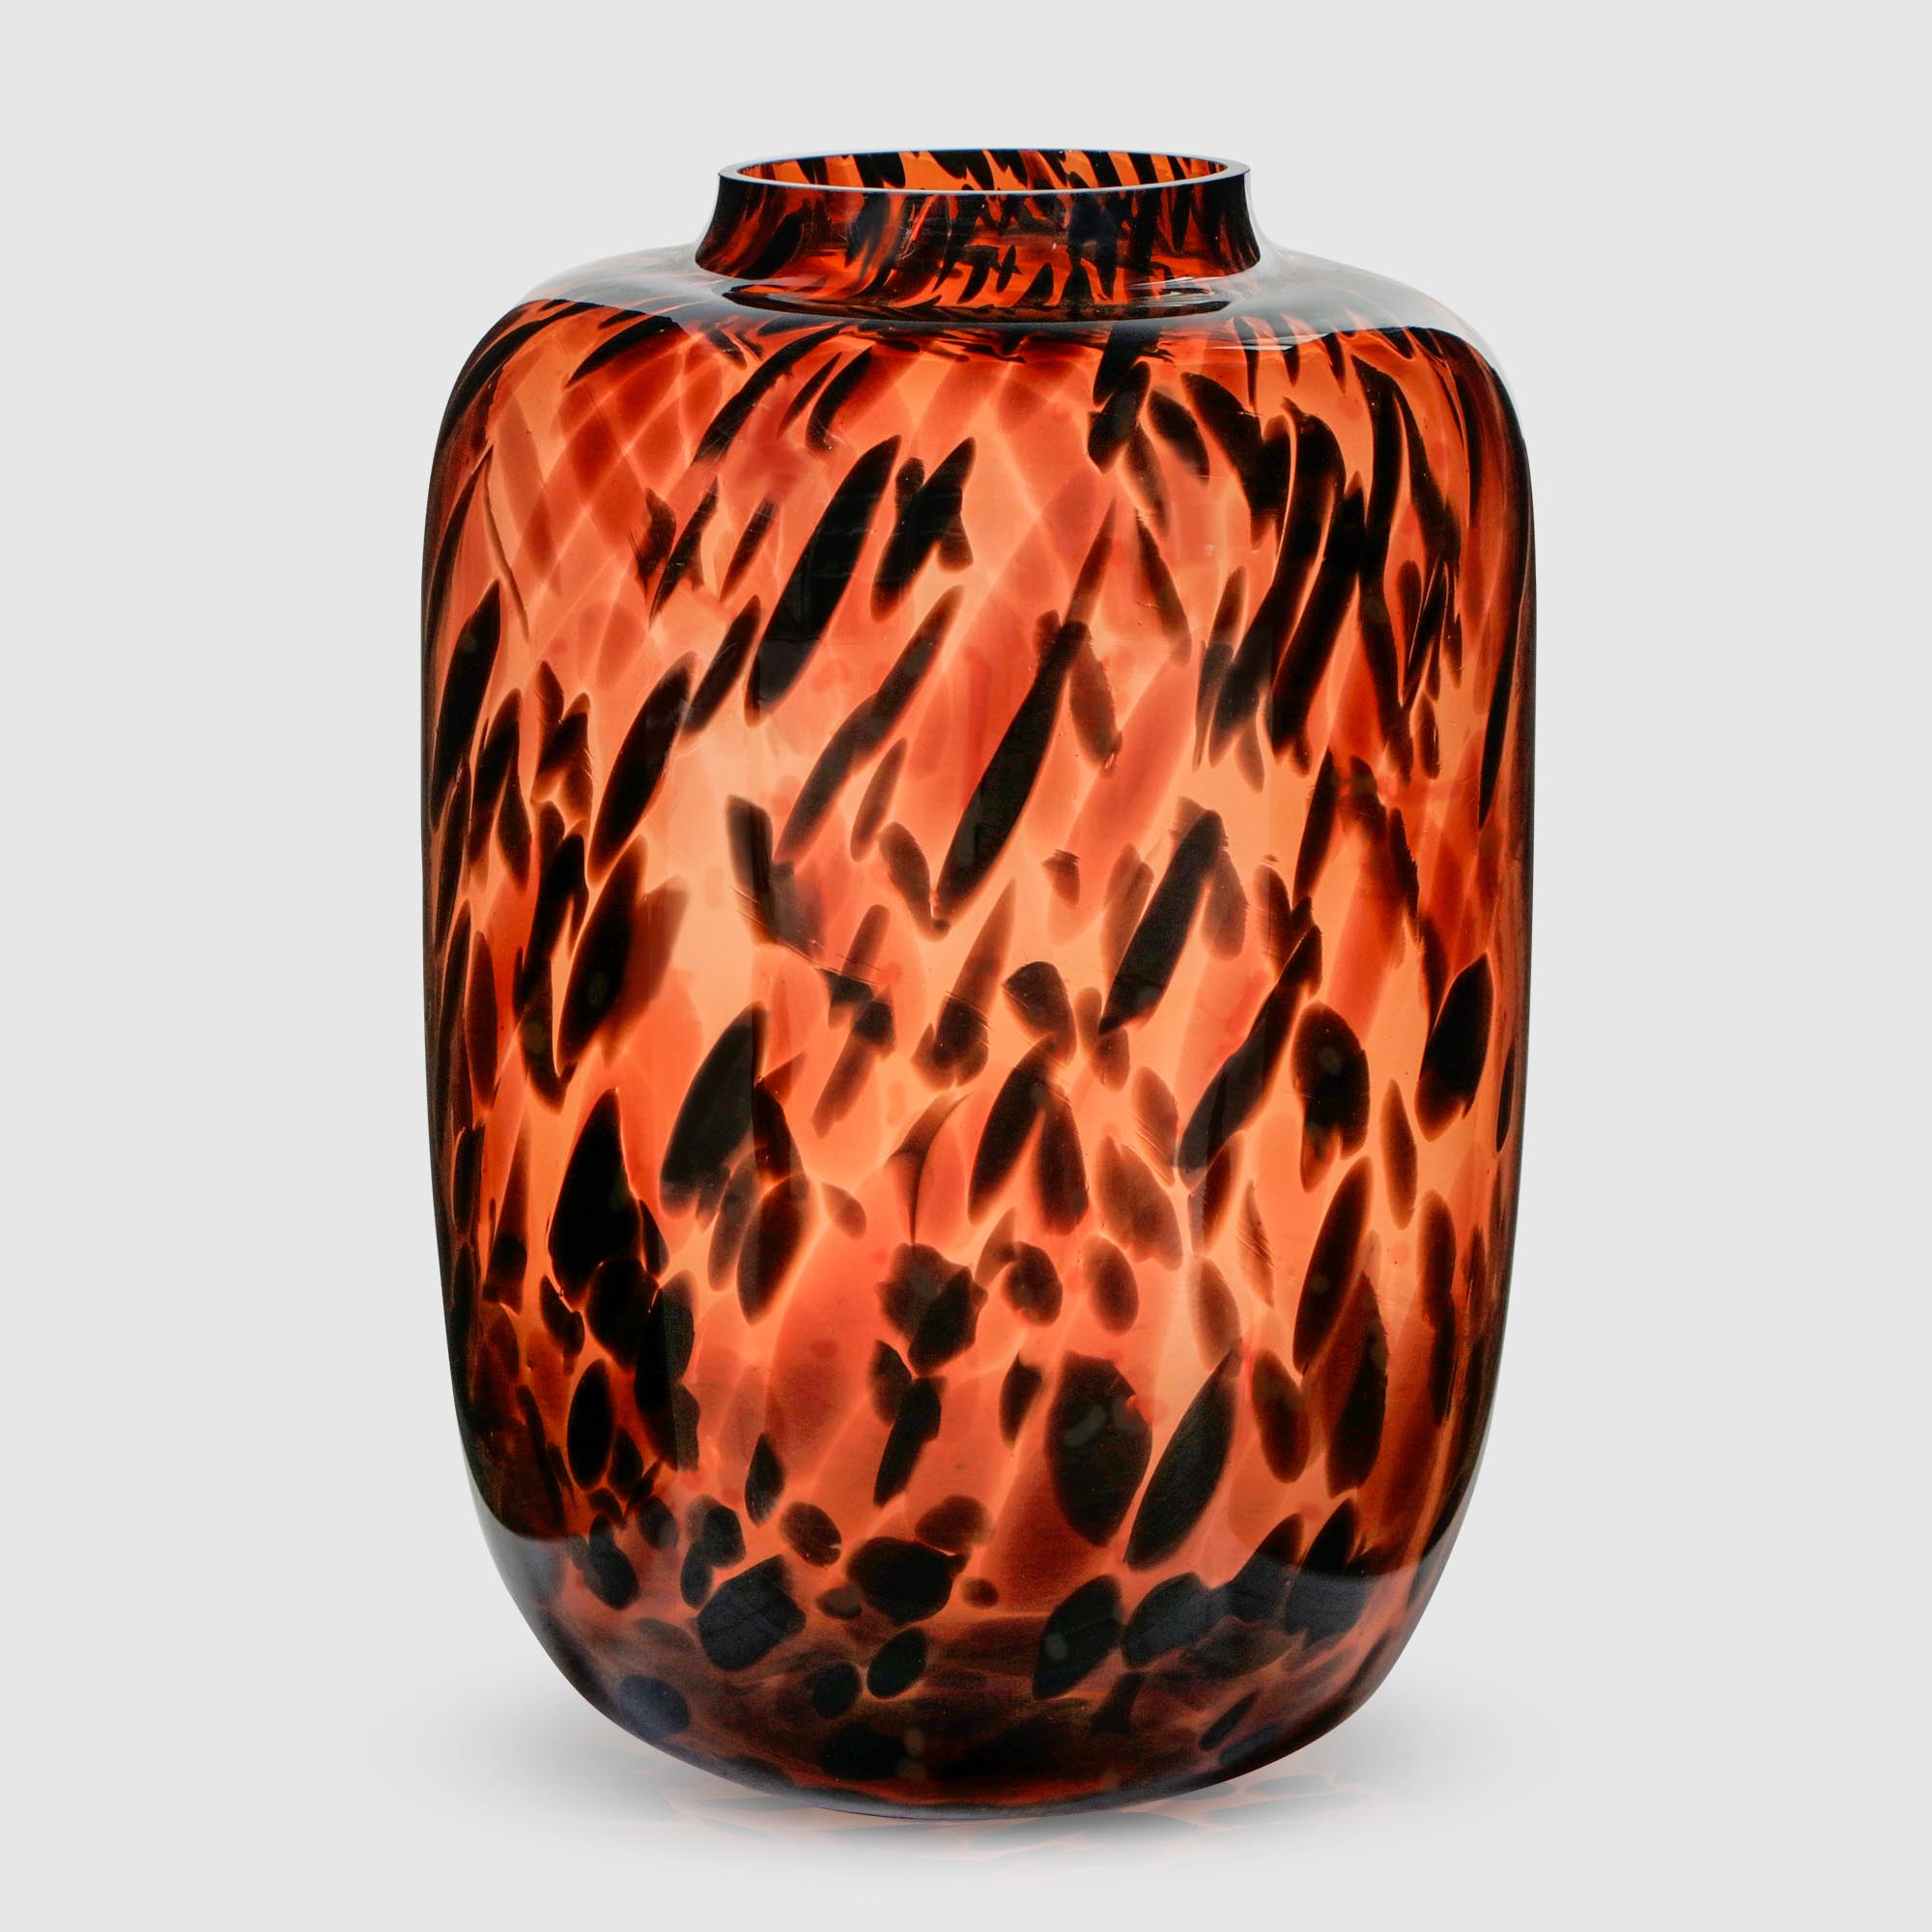 Ваза Hakbijl glass tiger big д29х42 см янтарно-чёрная